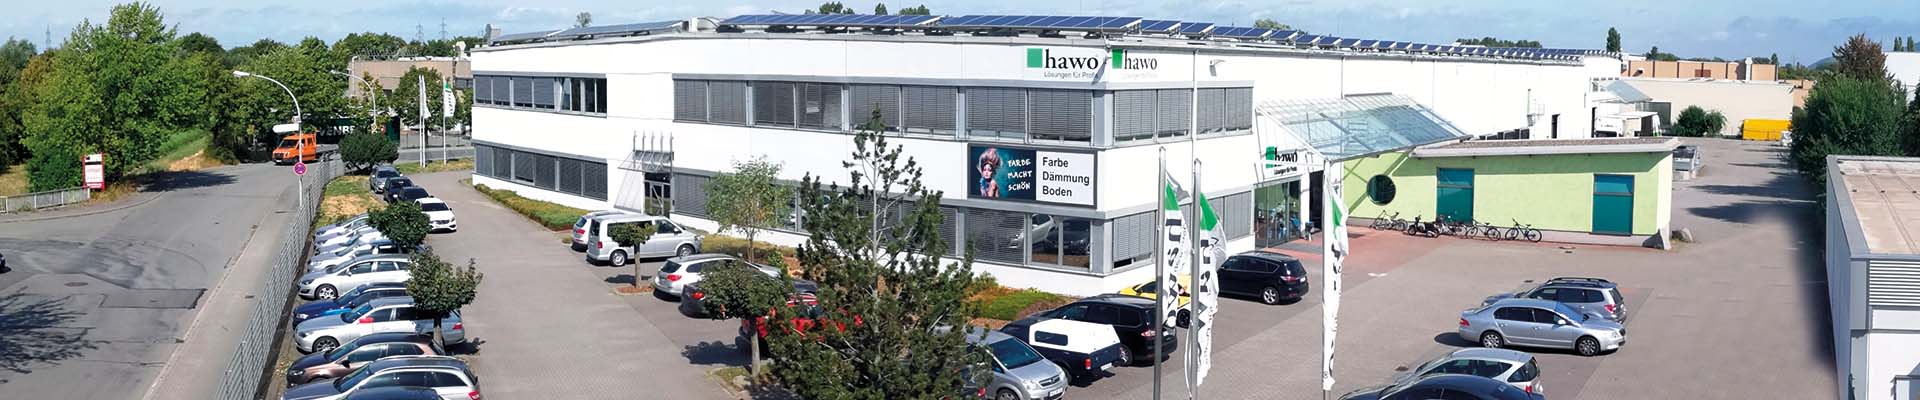 hawo GmbH – Heppenheim